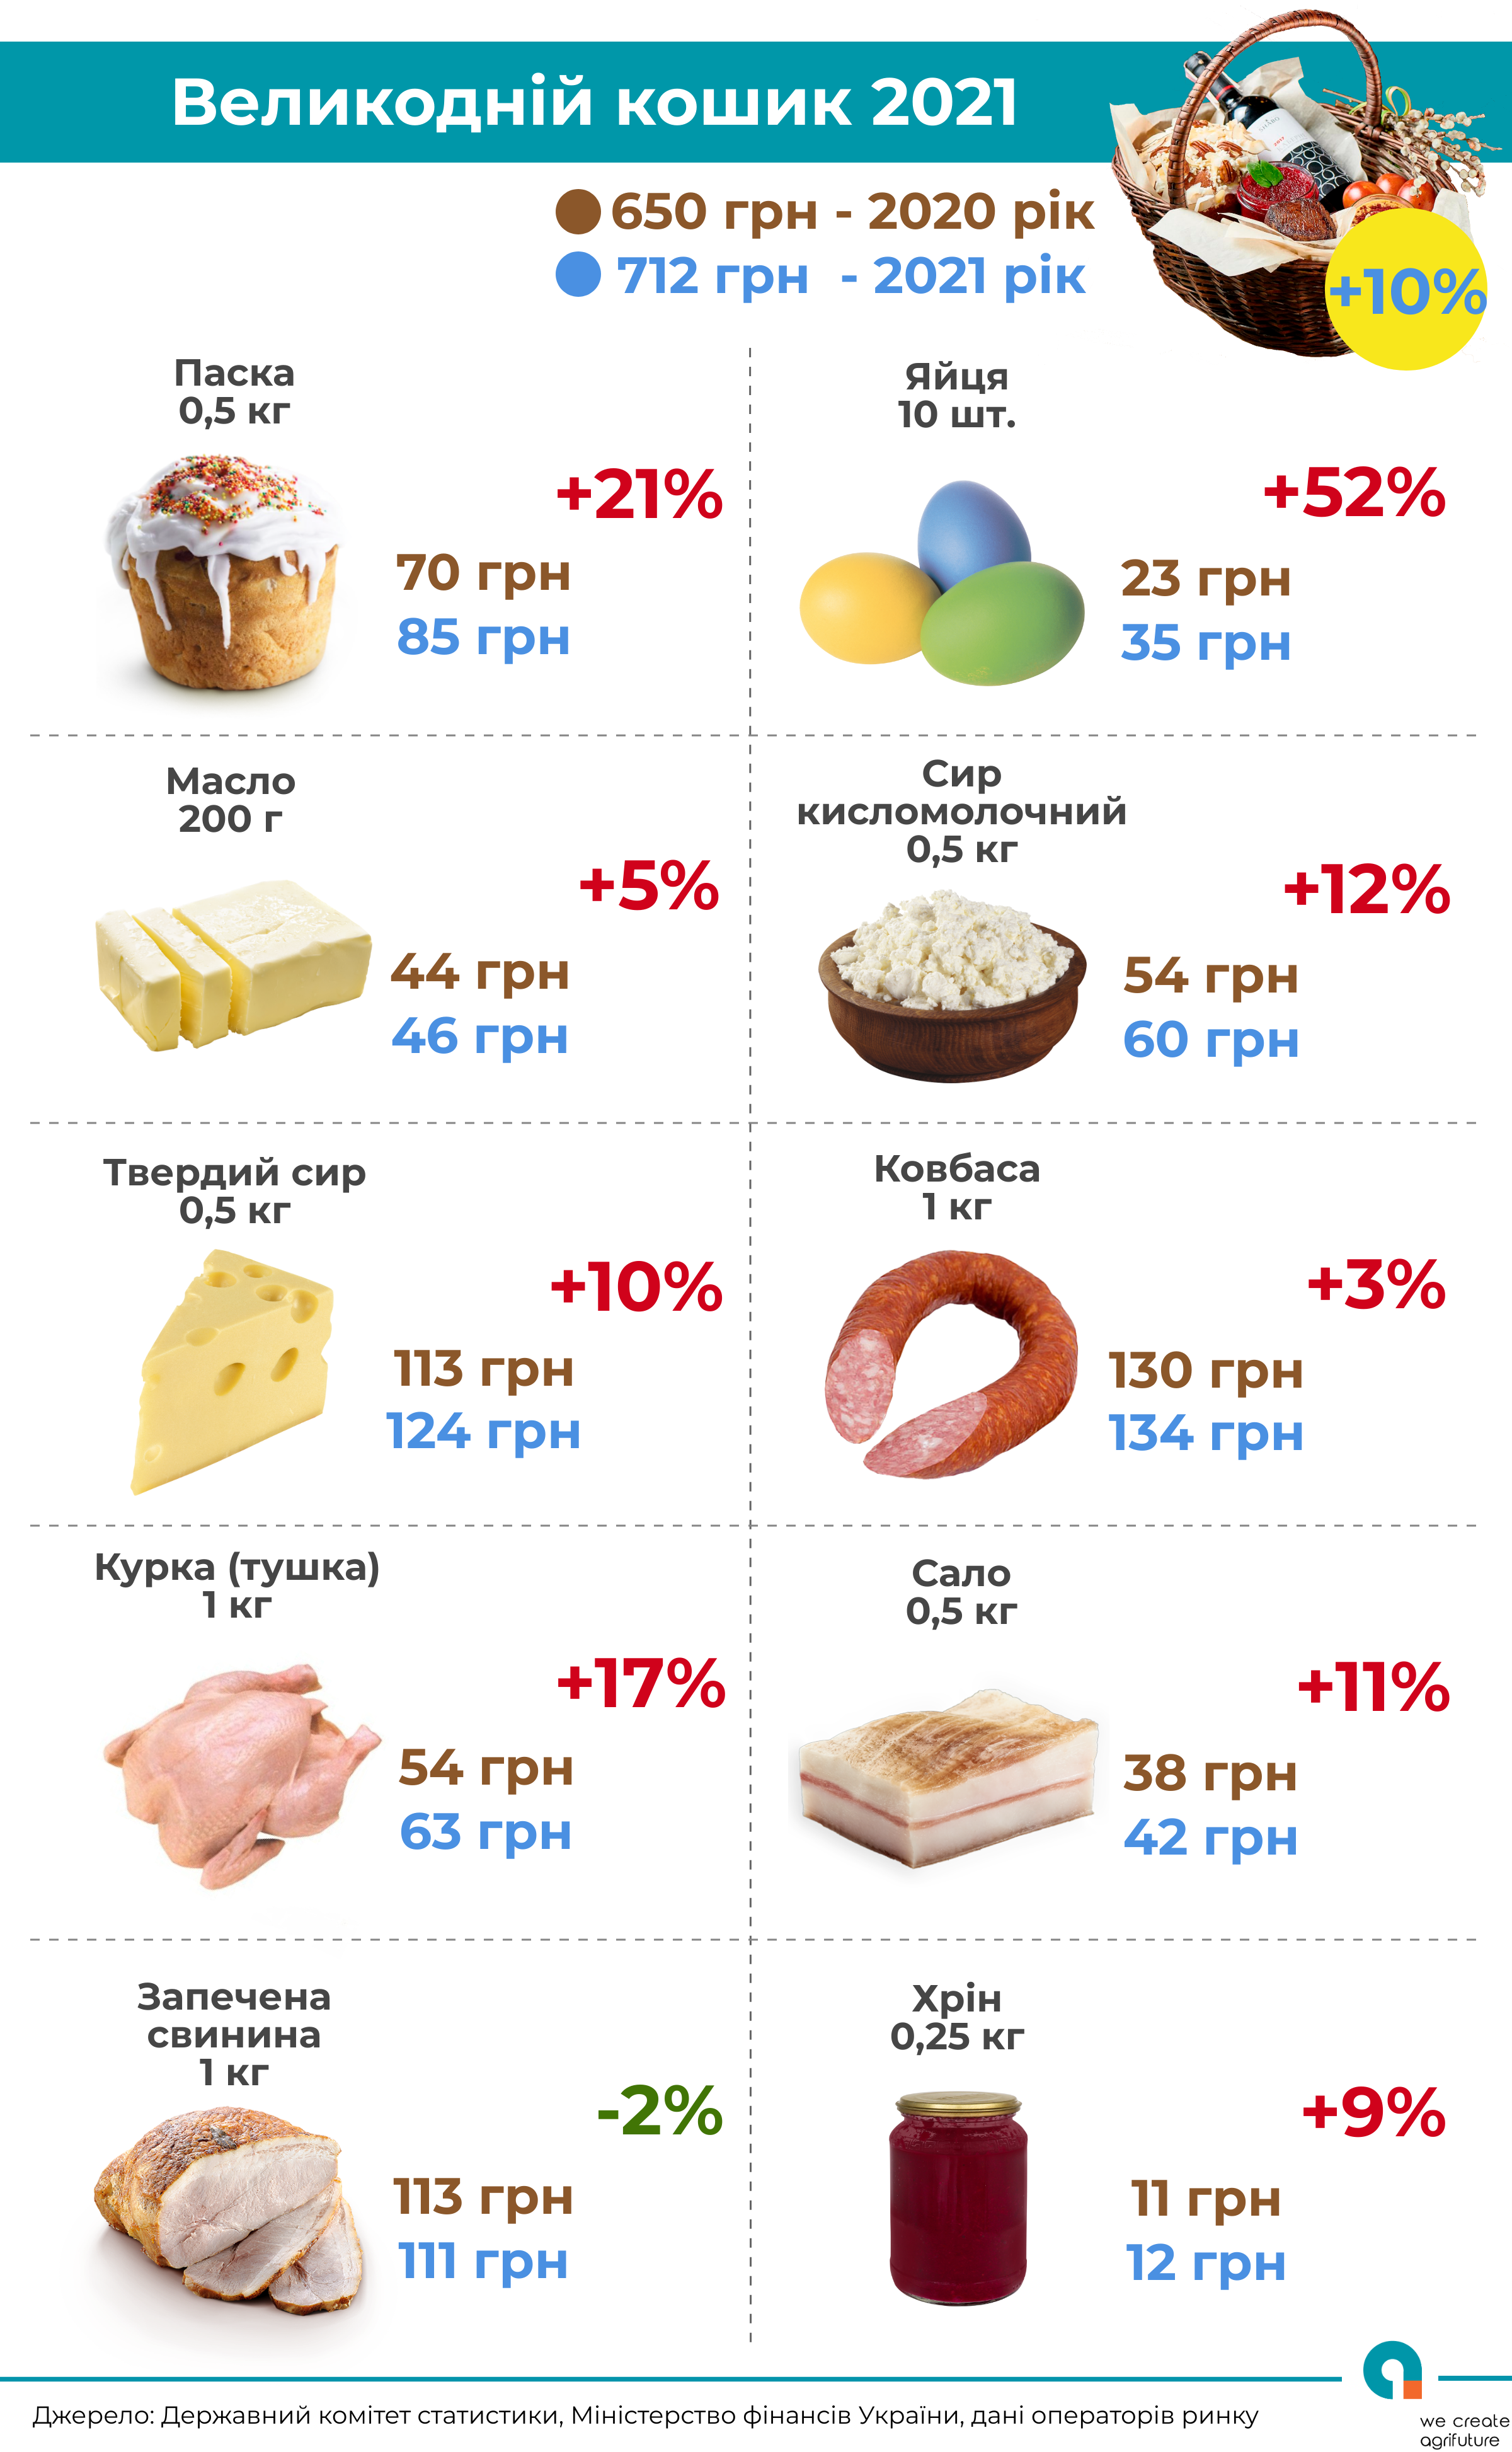 Изменение цен на Пасхальные продукты. Скриншот из клуба аграрного бизнеса 